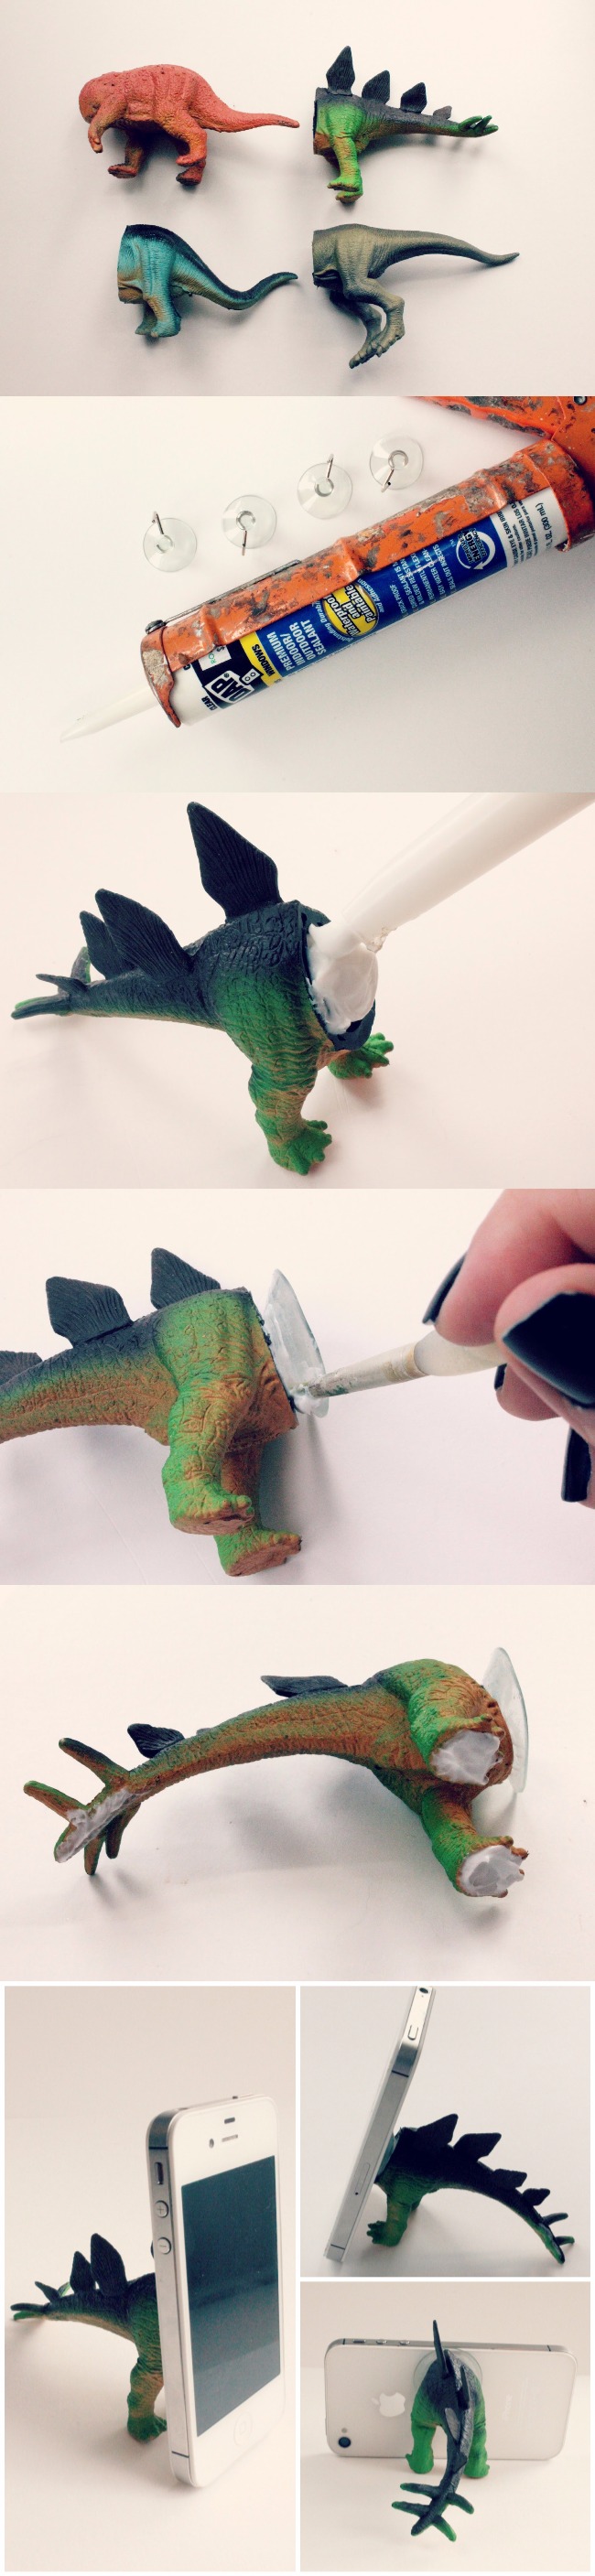 DIY Dinosaur Phone Stand